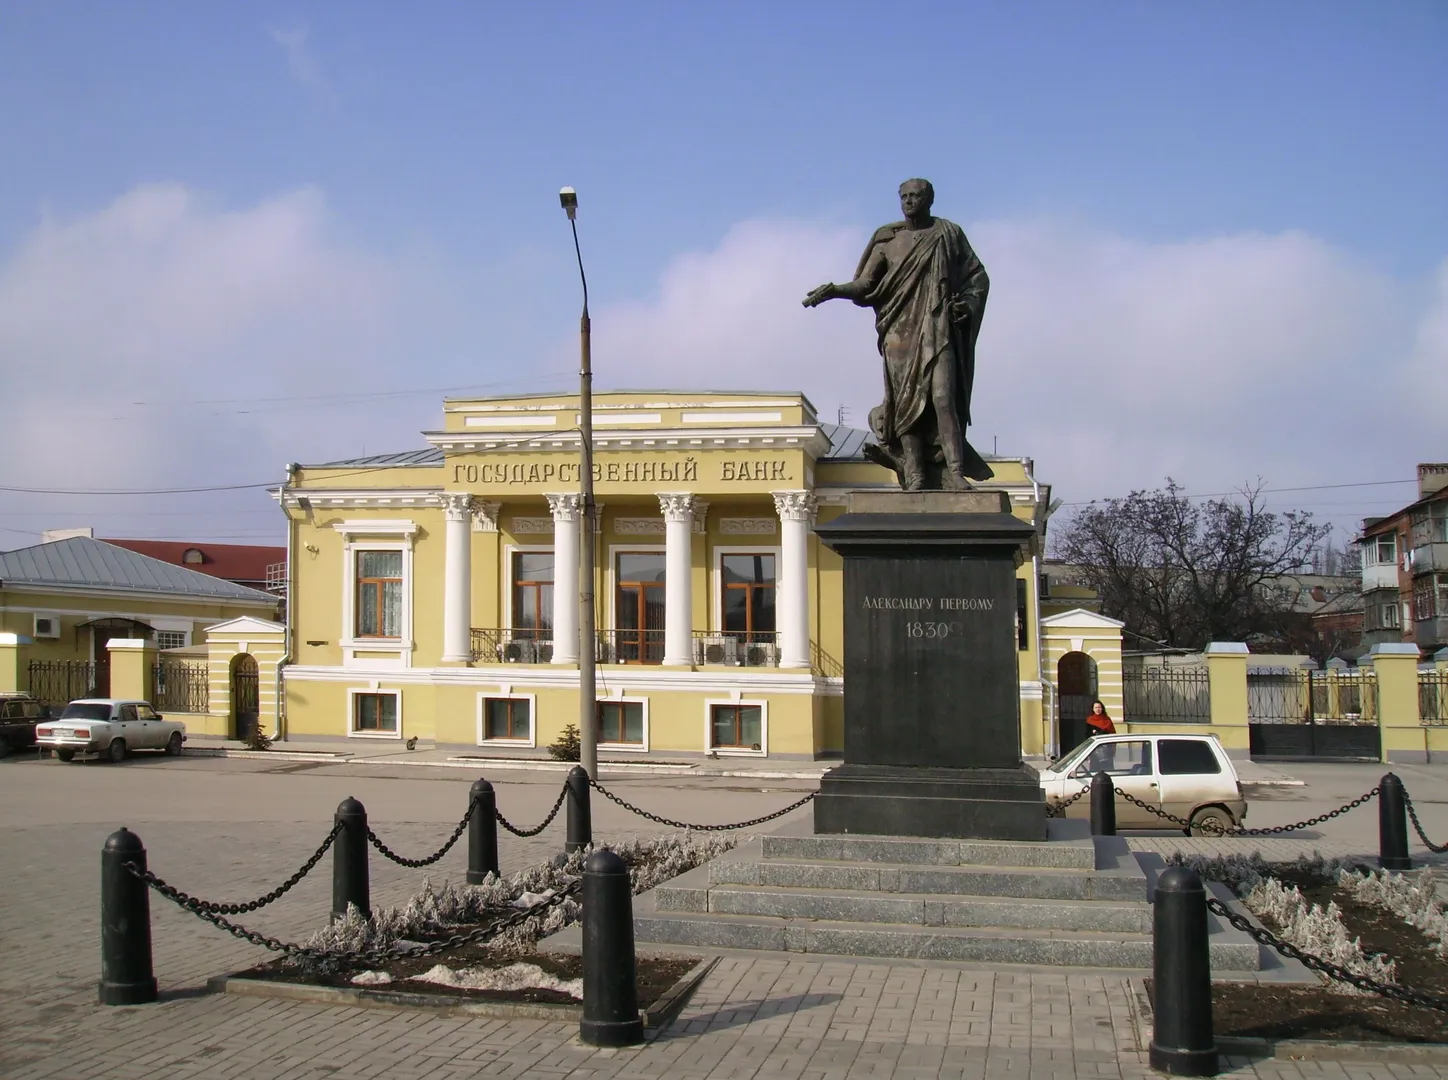 Рядом с домом Банковская площадь и памятник императору Александру I